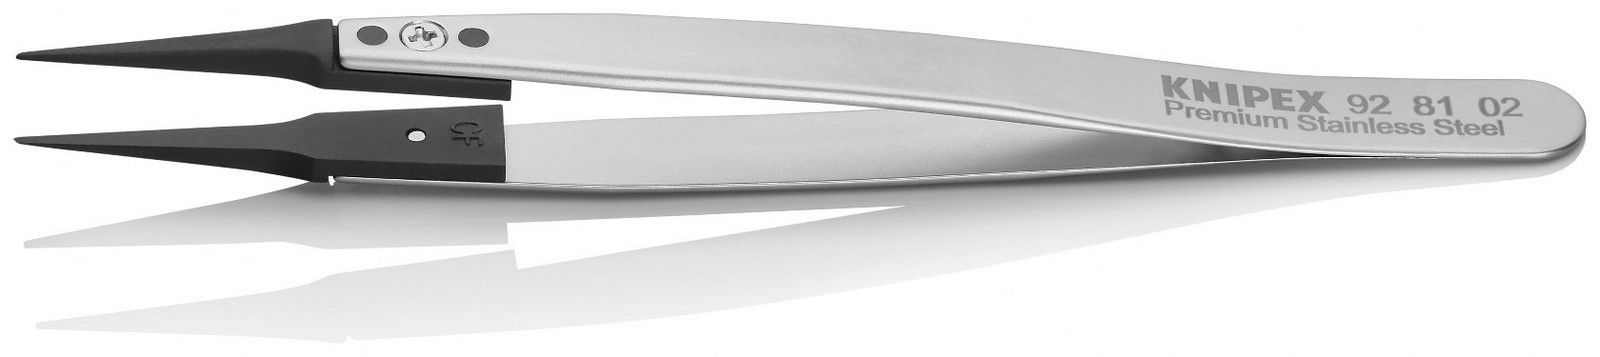 Knipex precizna špic pinceta sa izmenjivim ESD vrhovima (92 81 02)